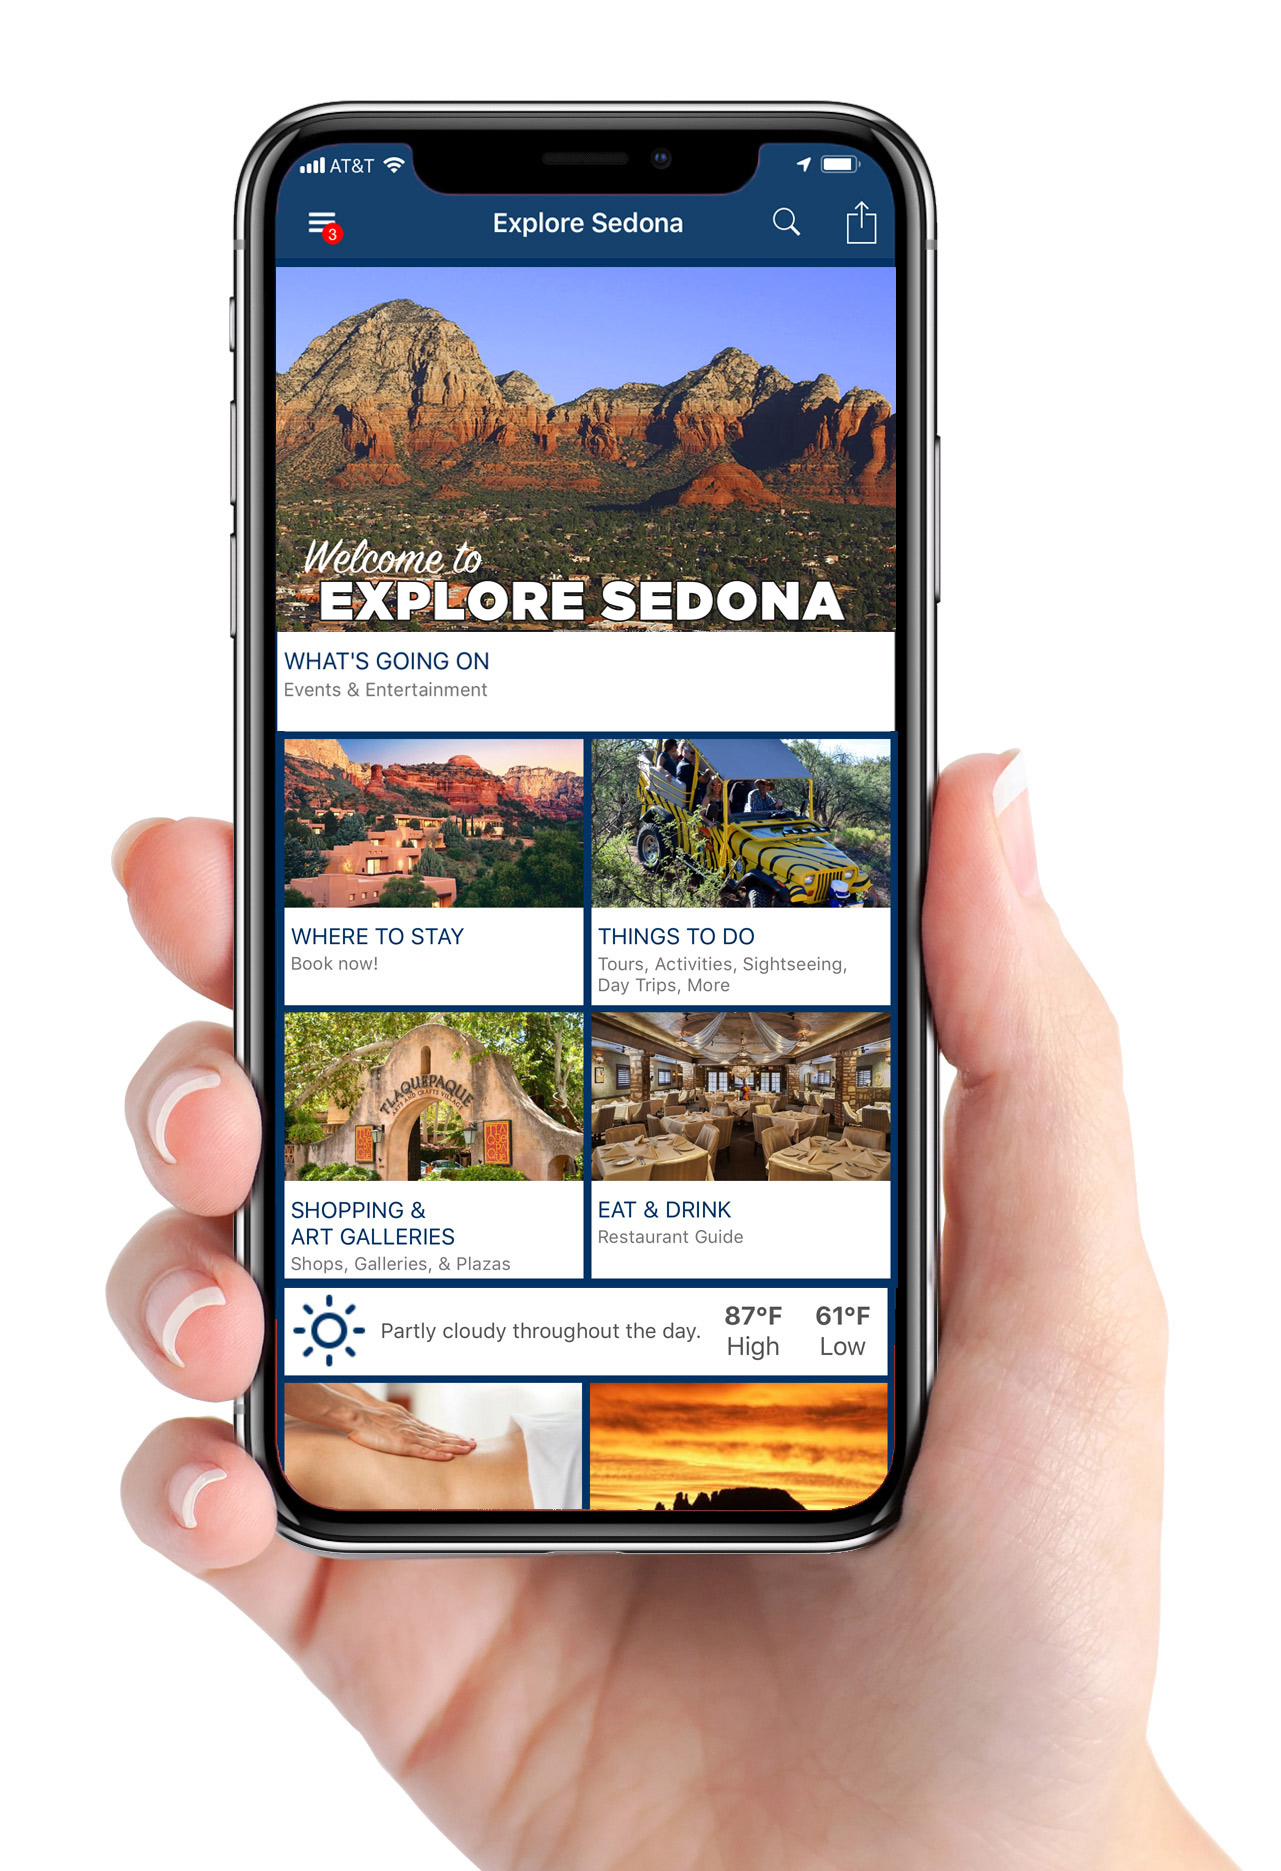 iPhone with the Explore Sedona app